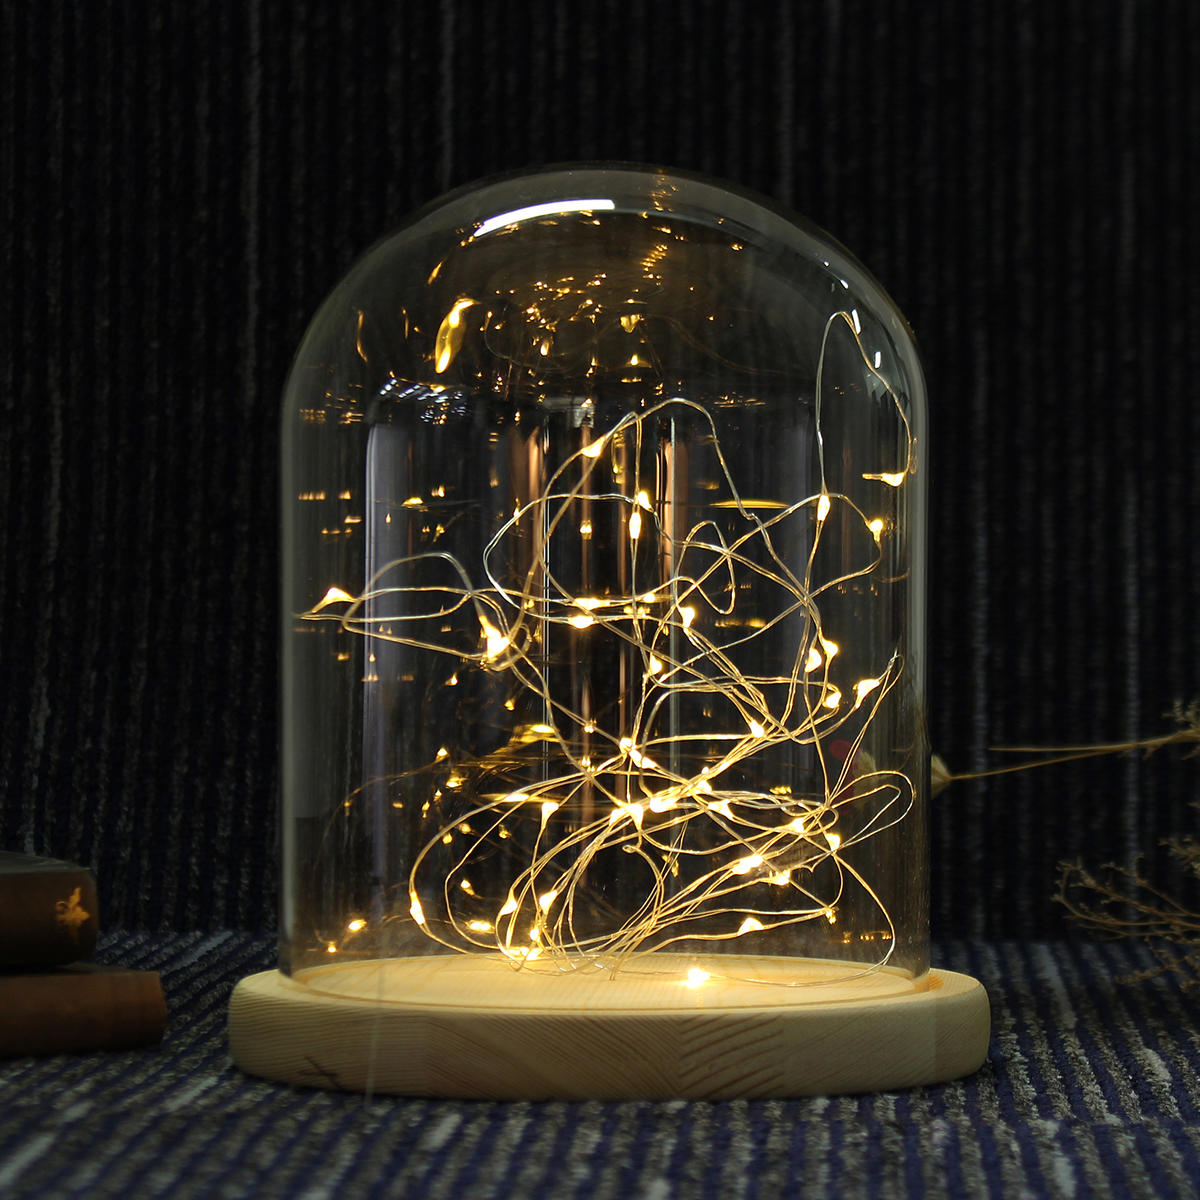 15*18.5cm Glazen Koepel Display Pot Kleding Decoratie Houten Voetstuk met Fee LED-licht